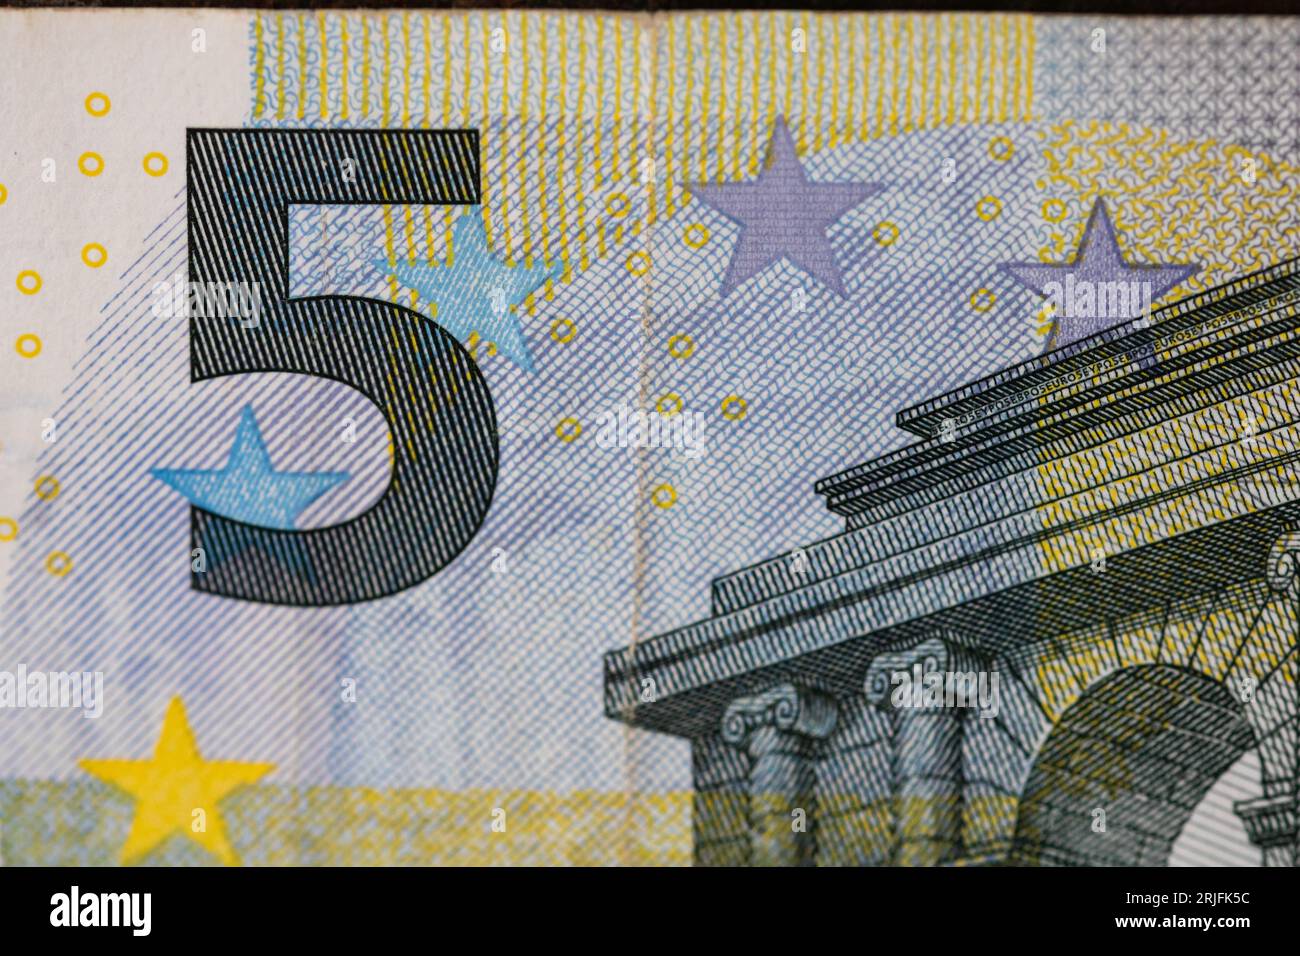 Die EURO-Währung in Zeiten der europäischen Inflation Stockfoto